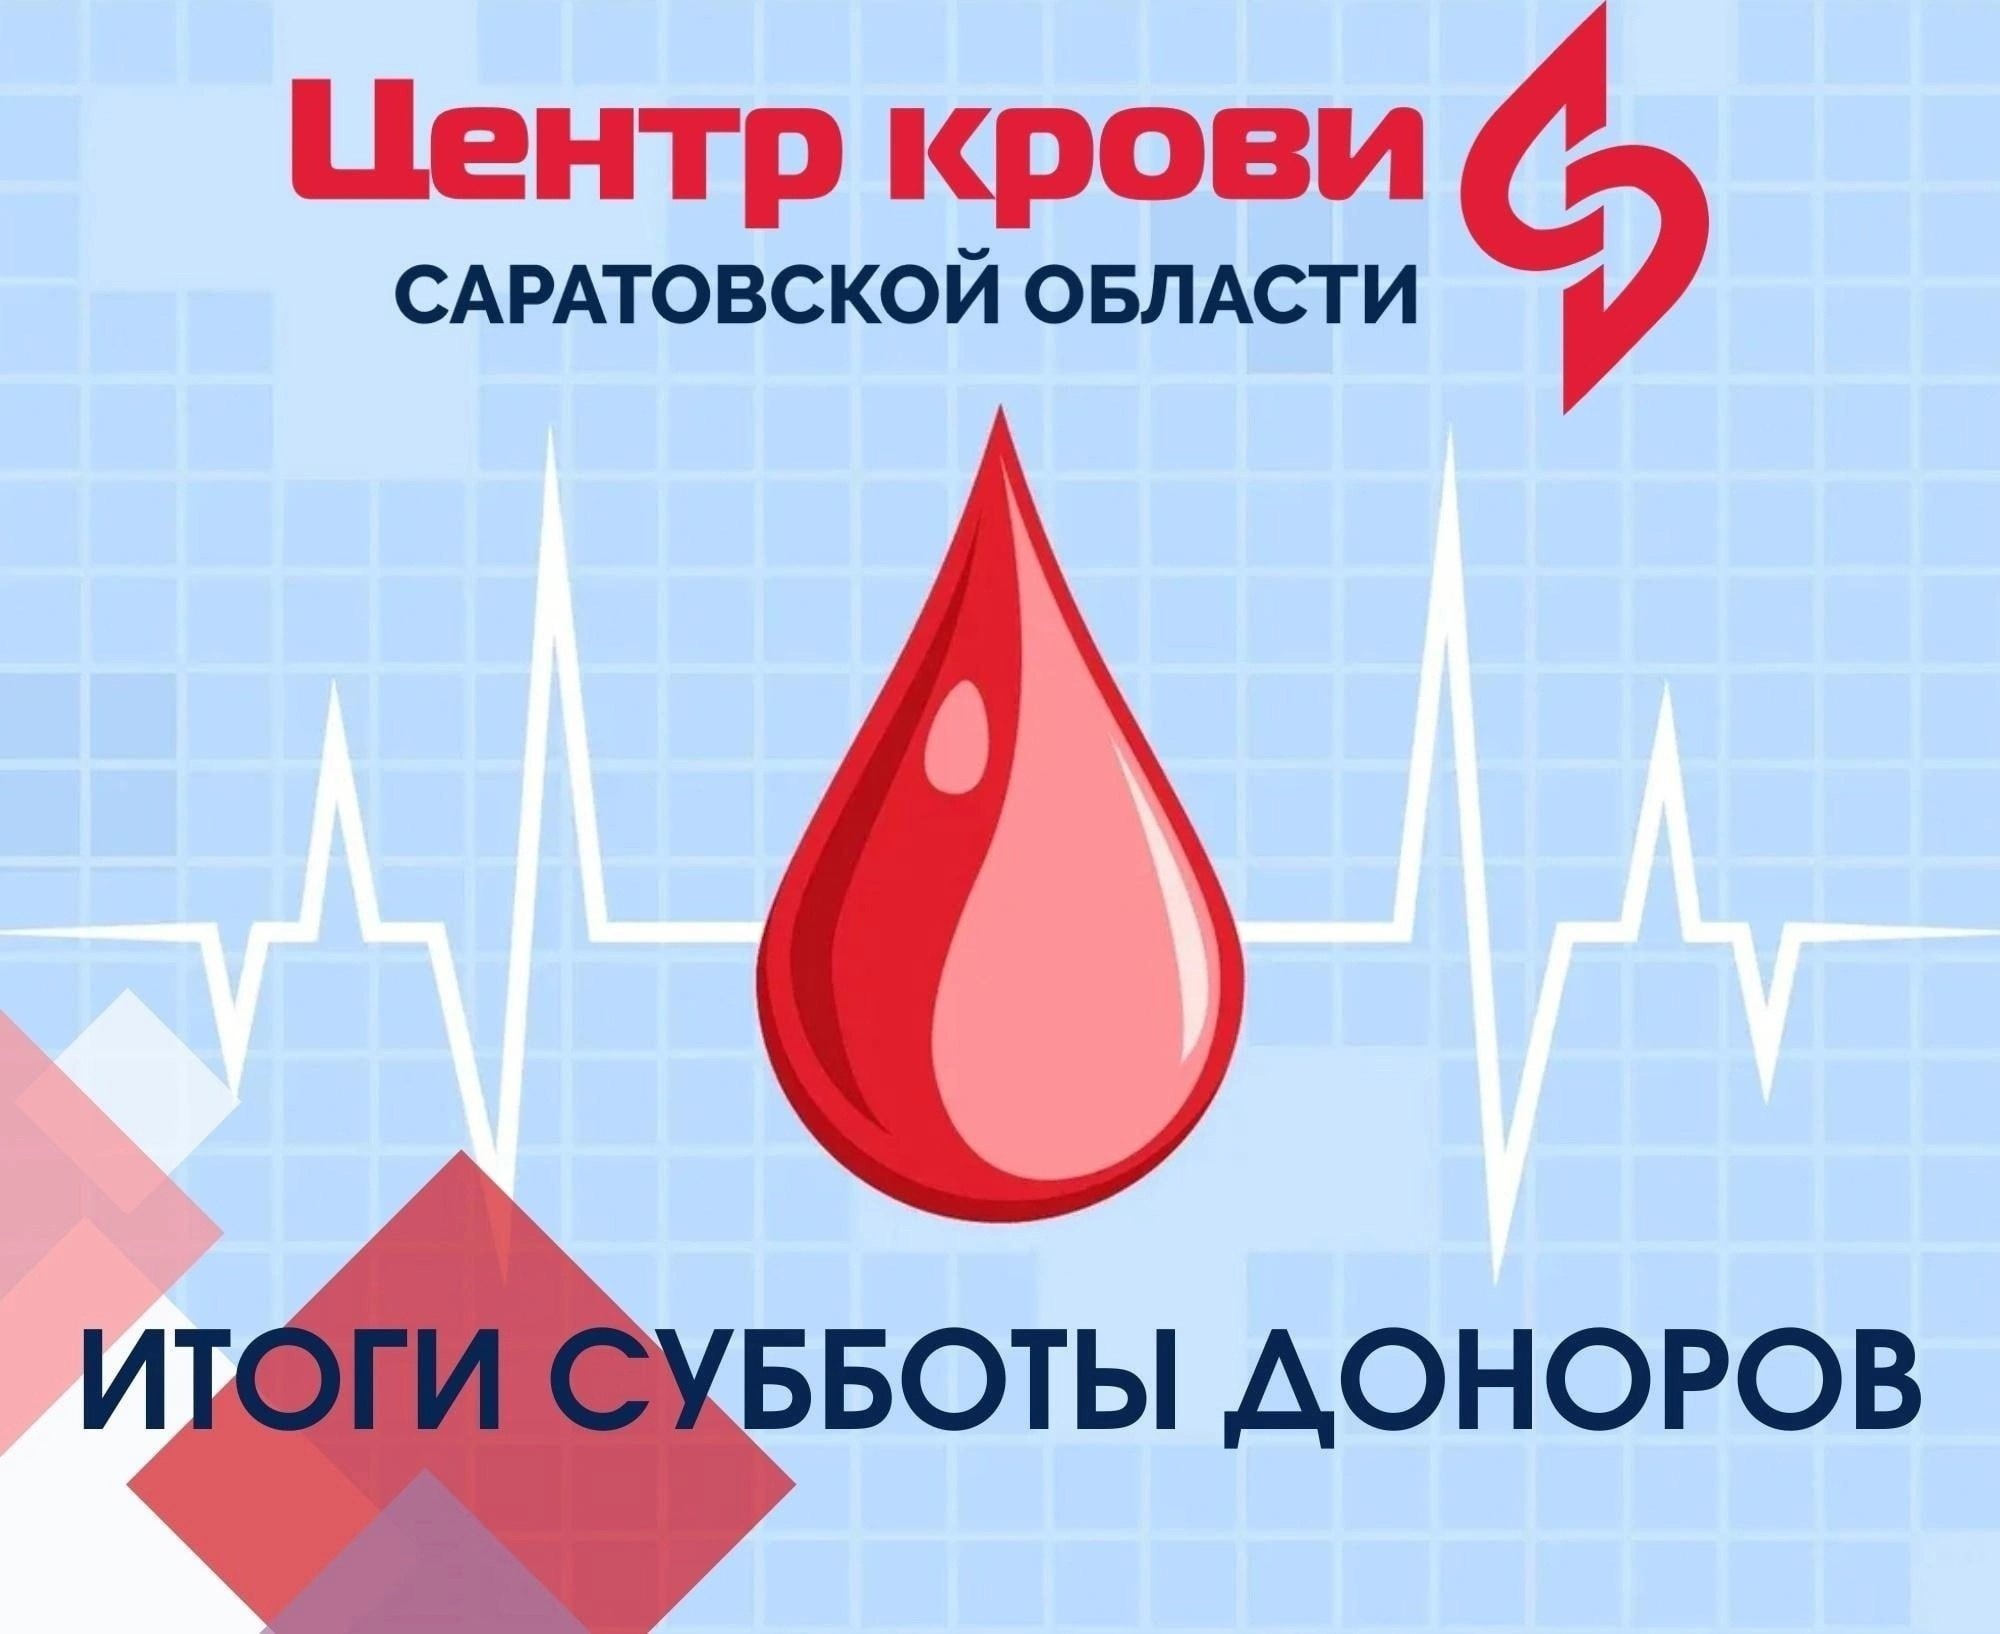 Суббота доноров. Донорство крови. Донорская суббота. Доноры крови ЕГЭ. Донорство крови интервал.